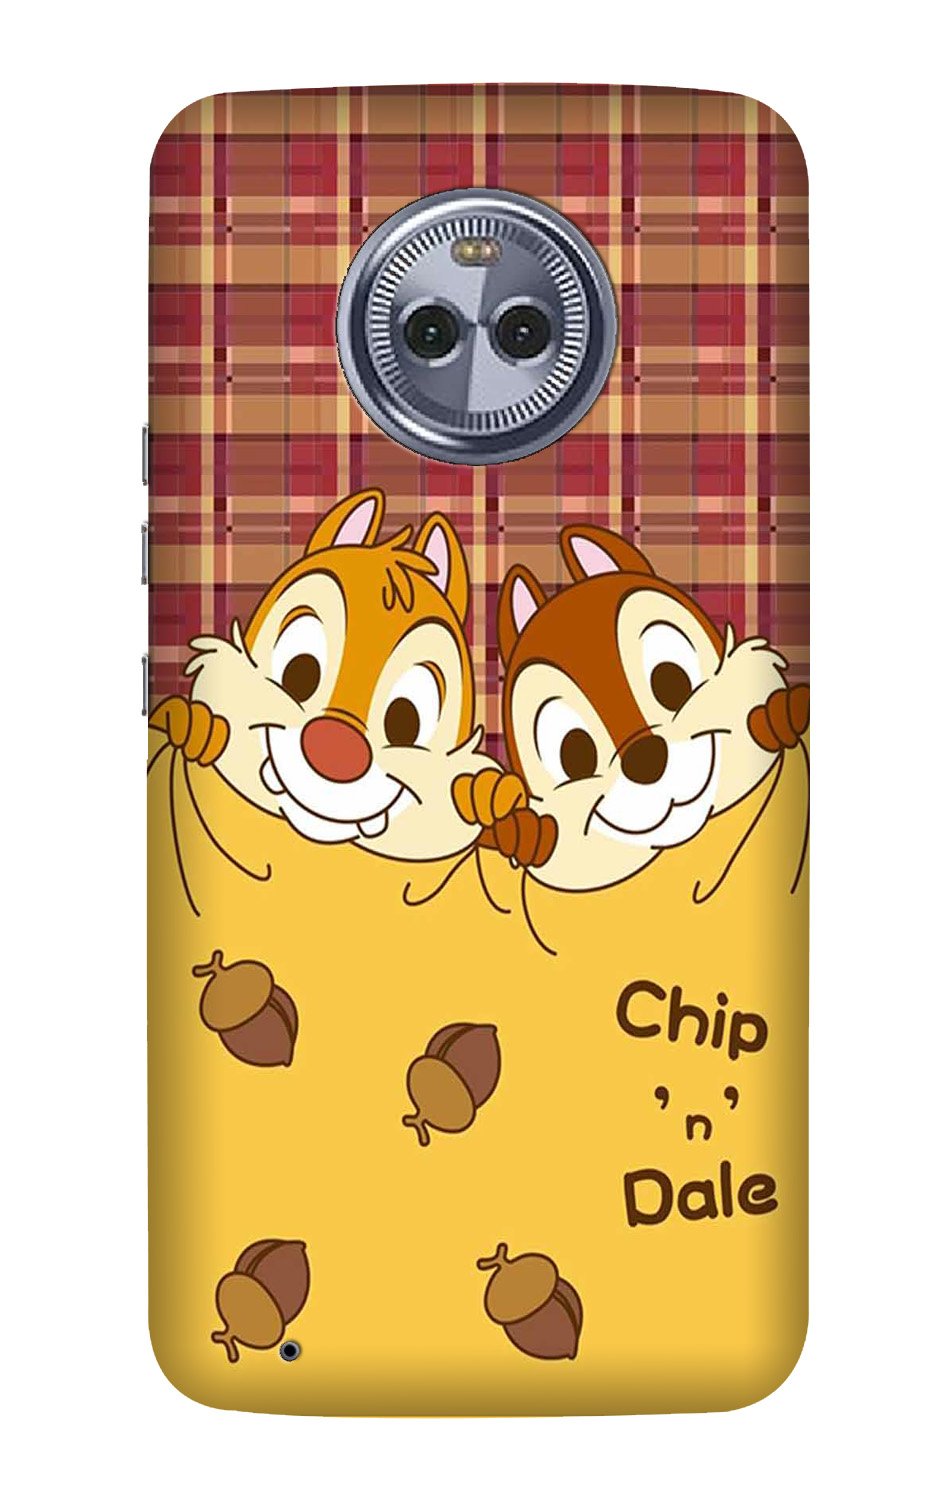 Chip n Dale Mobile Back Case for Moto G6 (Design - 342)